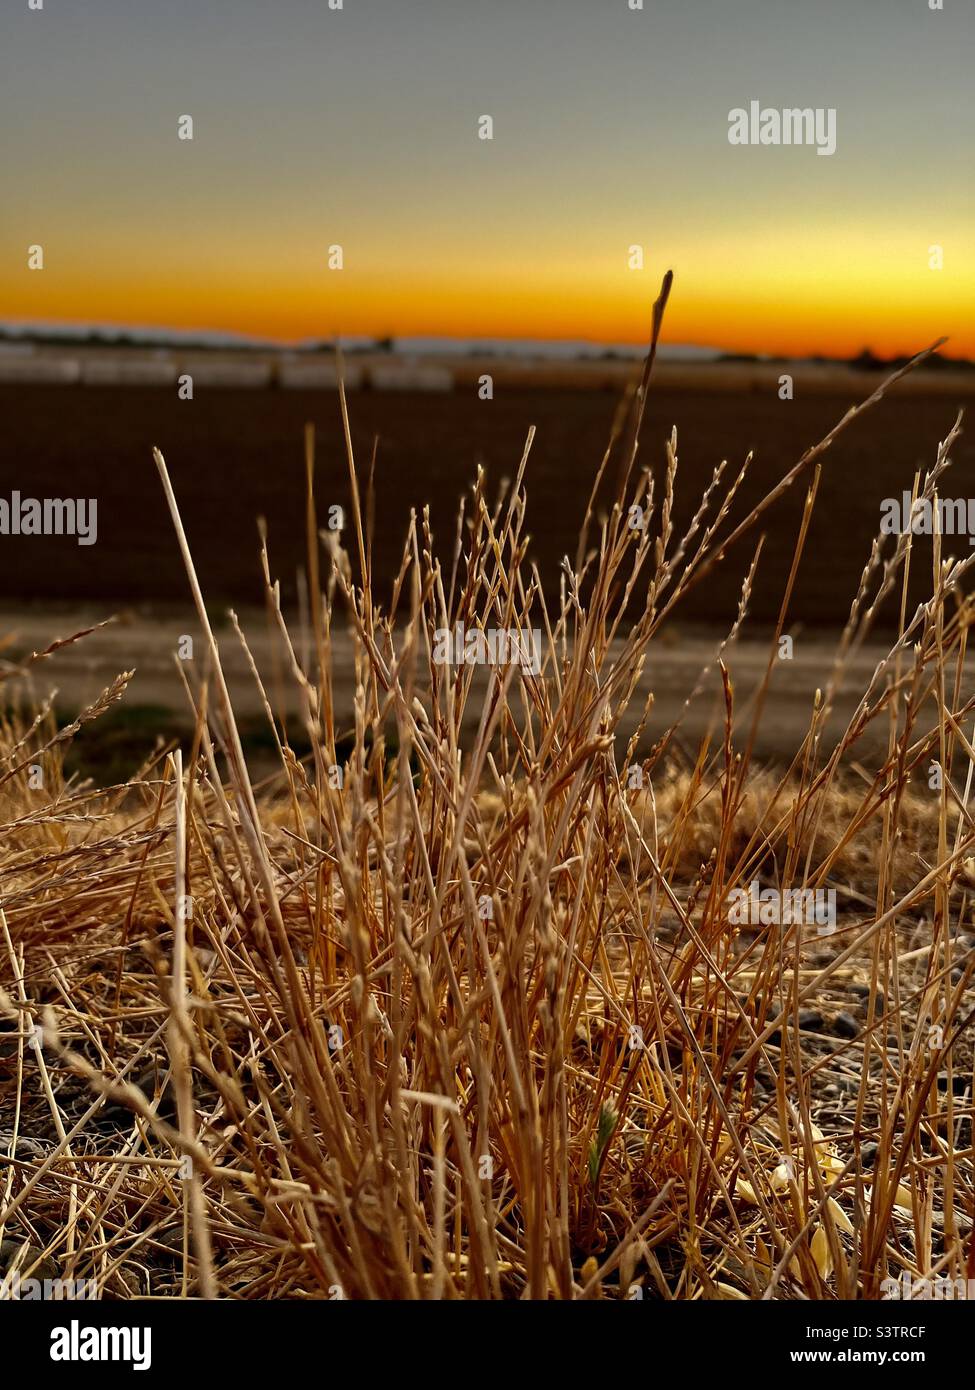 Unique, l'herbe brune est concentrée avec le mode portrait sur l'iPhone. Magnifique coucher de soleil en Californie. Banque D'Images